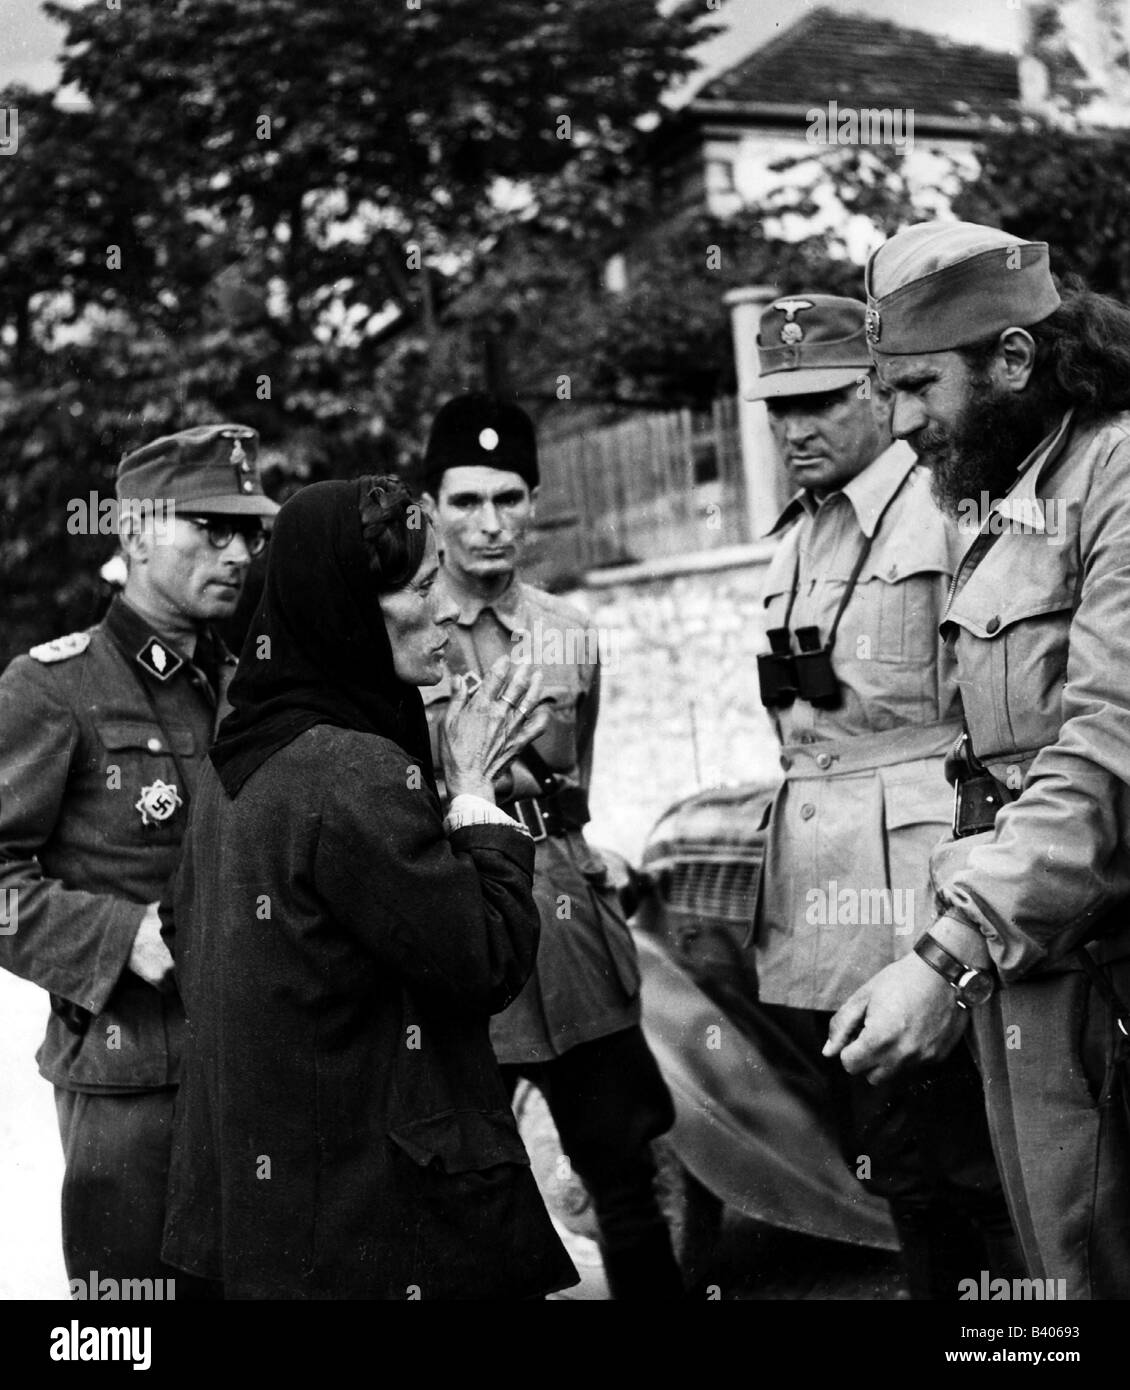 Événements, deuxième Guerre mondiale / seconde Guerre mondiale, Yougoslavie, officiers allemands des troupes de montagne SS avec Yougoslaves (Ustases ou Chetniks), questionnant une femme, vers 1942, Banque D'Images